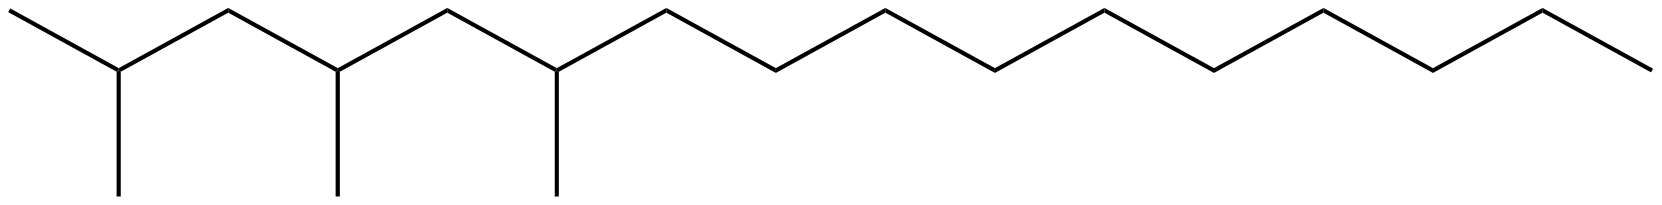 Image of hexadecane, 2,4,6-trimethyl-